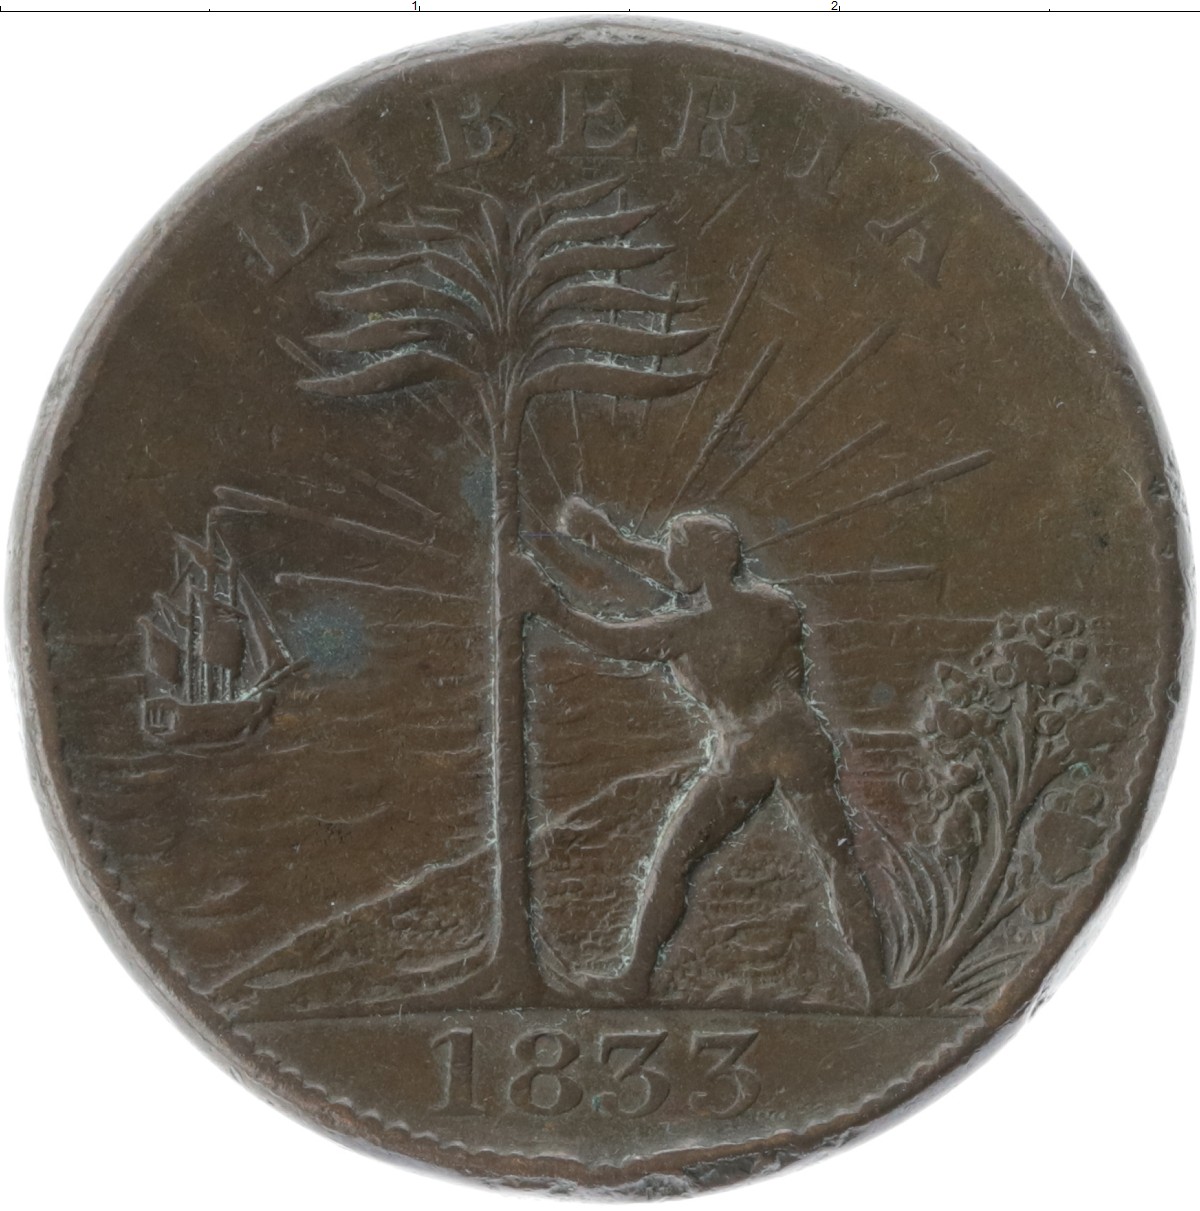 Клуб нумизмат монеты. Монеты Африки. Монеты Либерии. Монета Либерии Африканская. 1 Цент 1833.